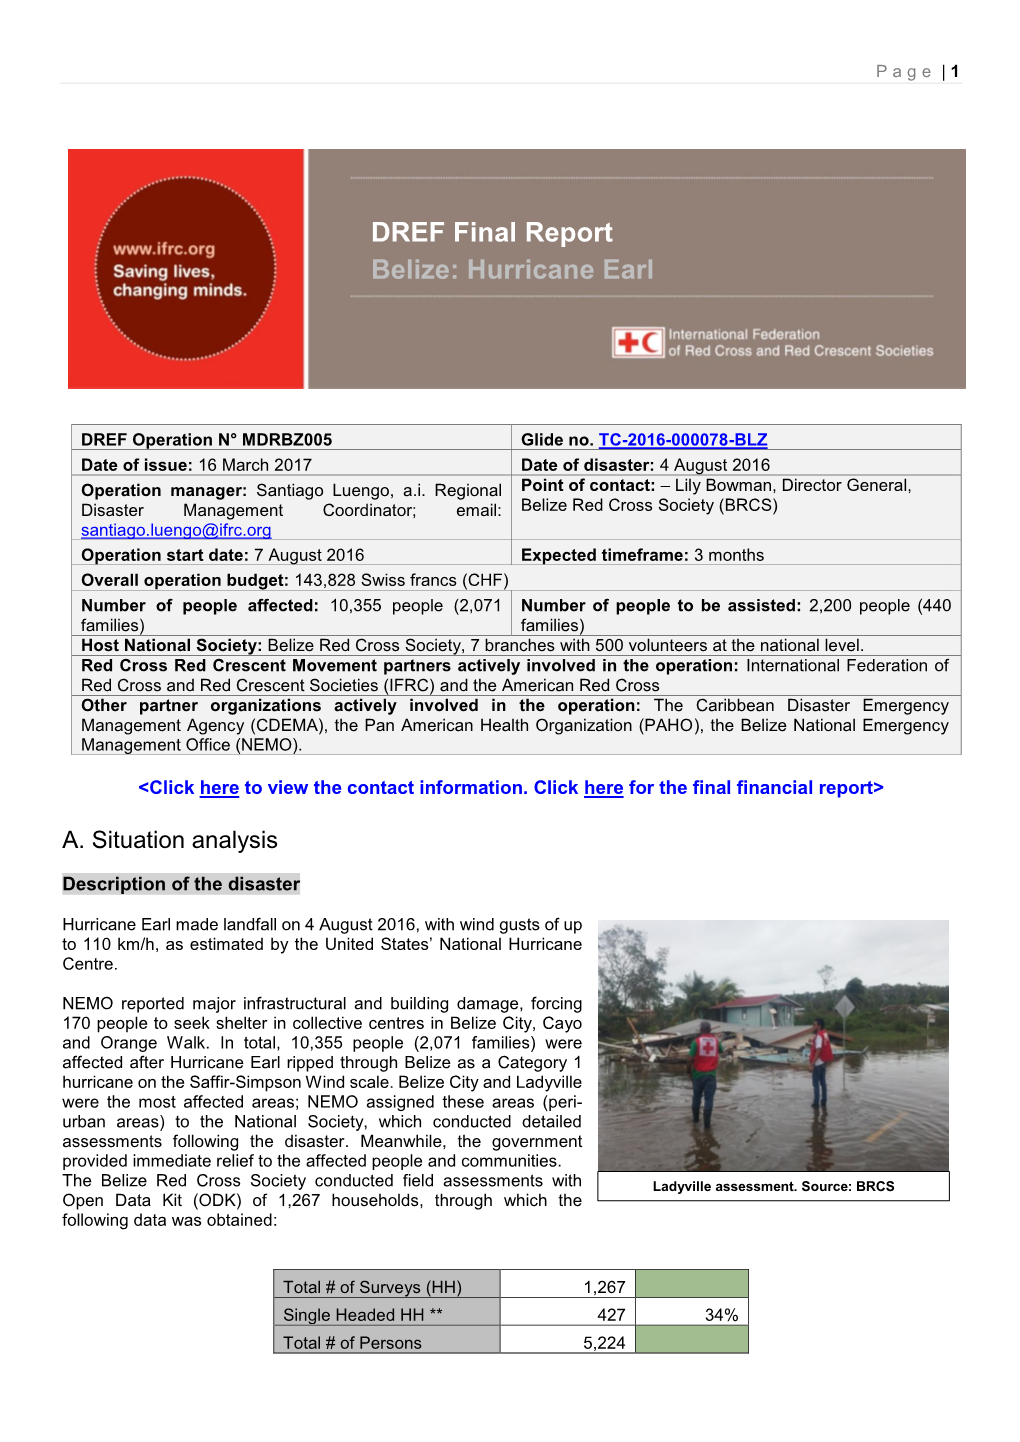 DREF Final Report Belize: Hurricane Earl